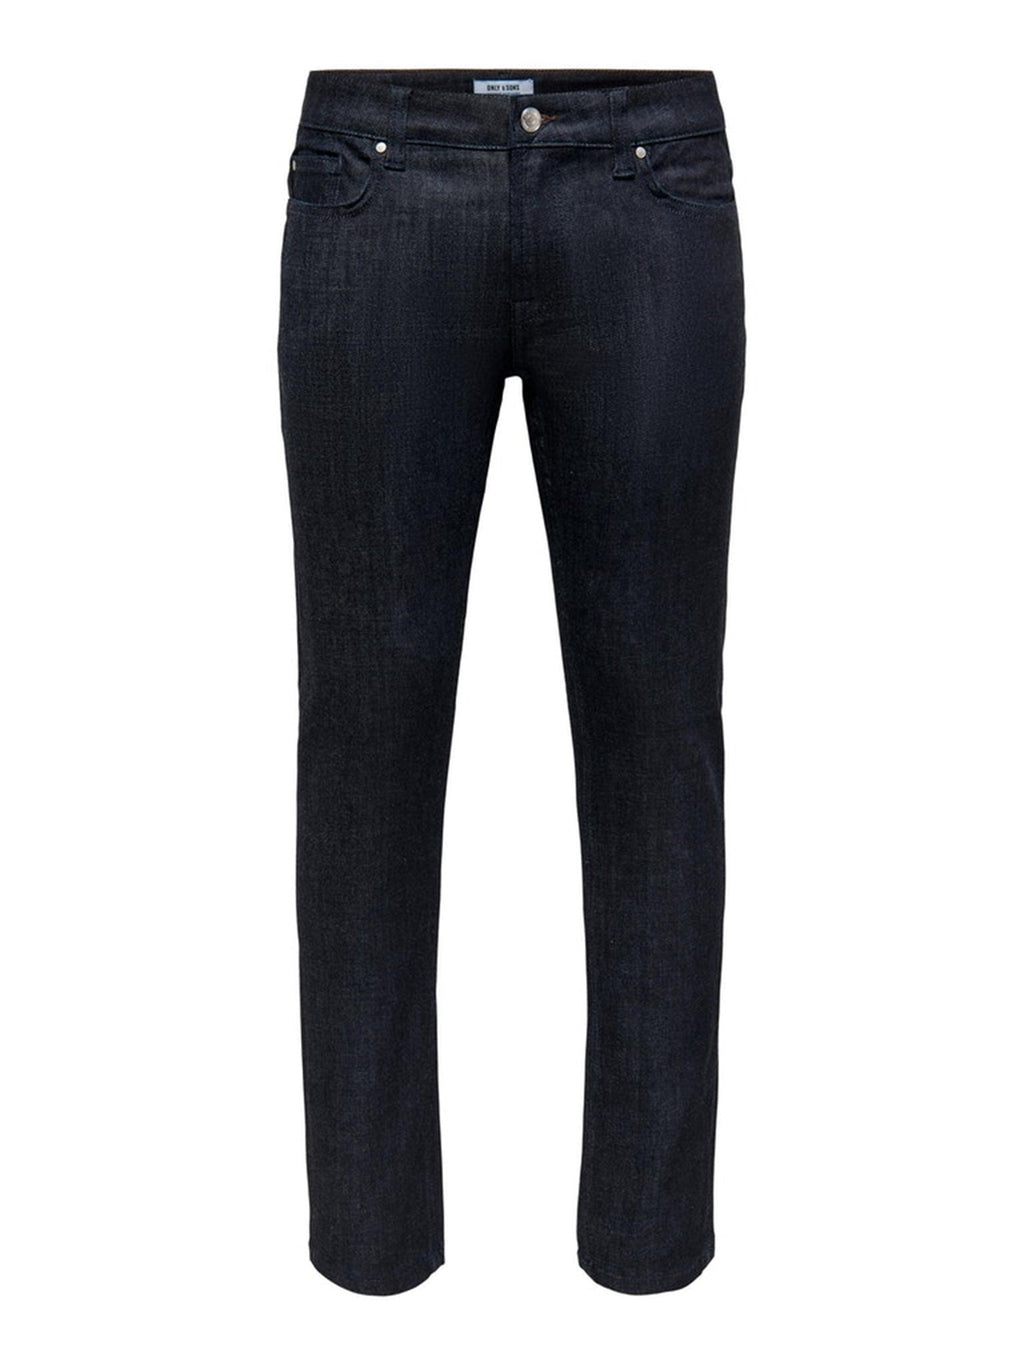 Loom Slim Raw Jeans - mėlynas džinsinis audinys